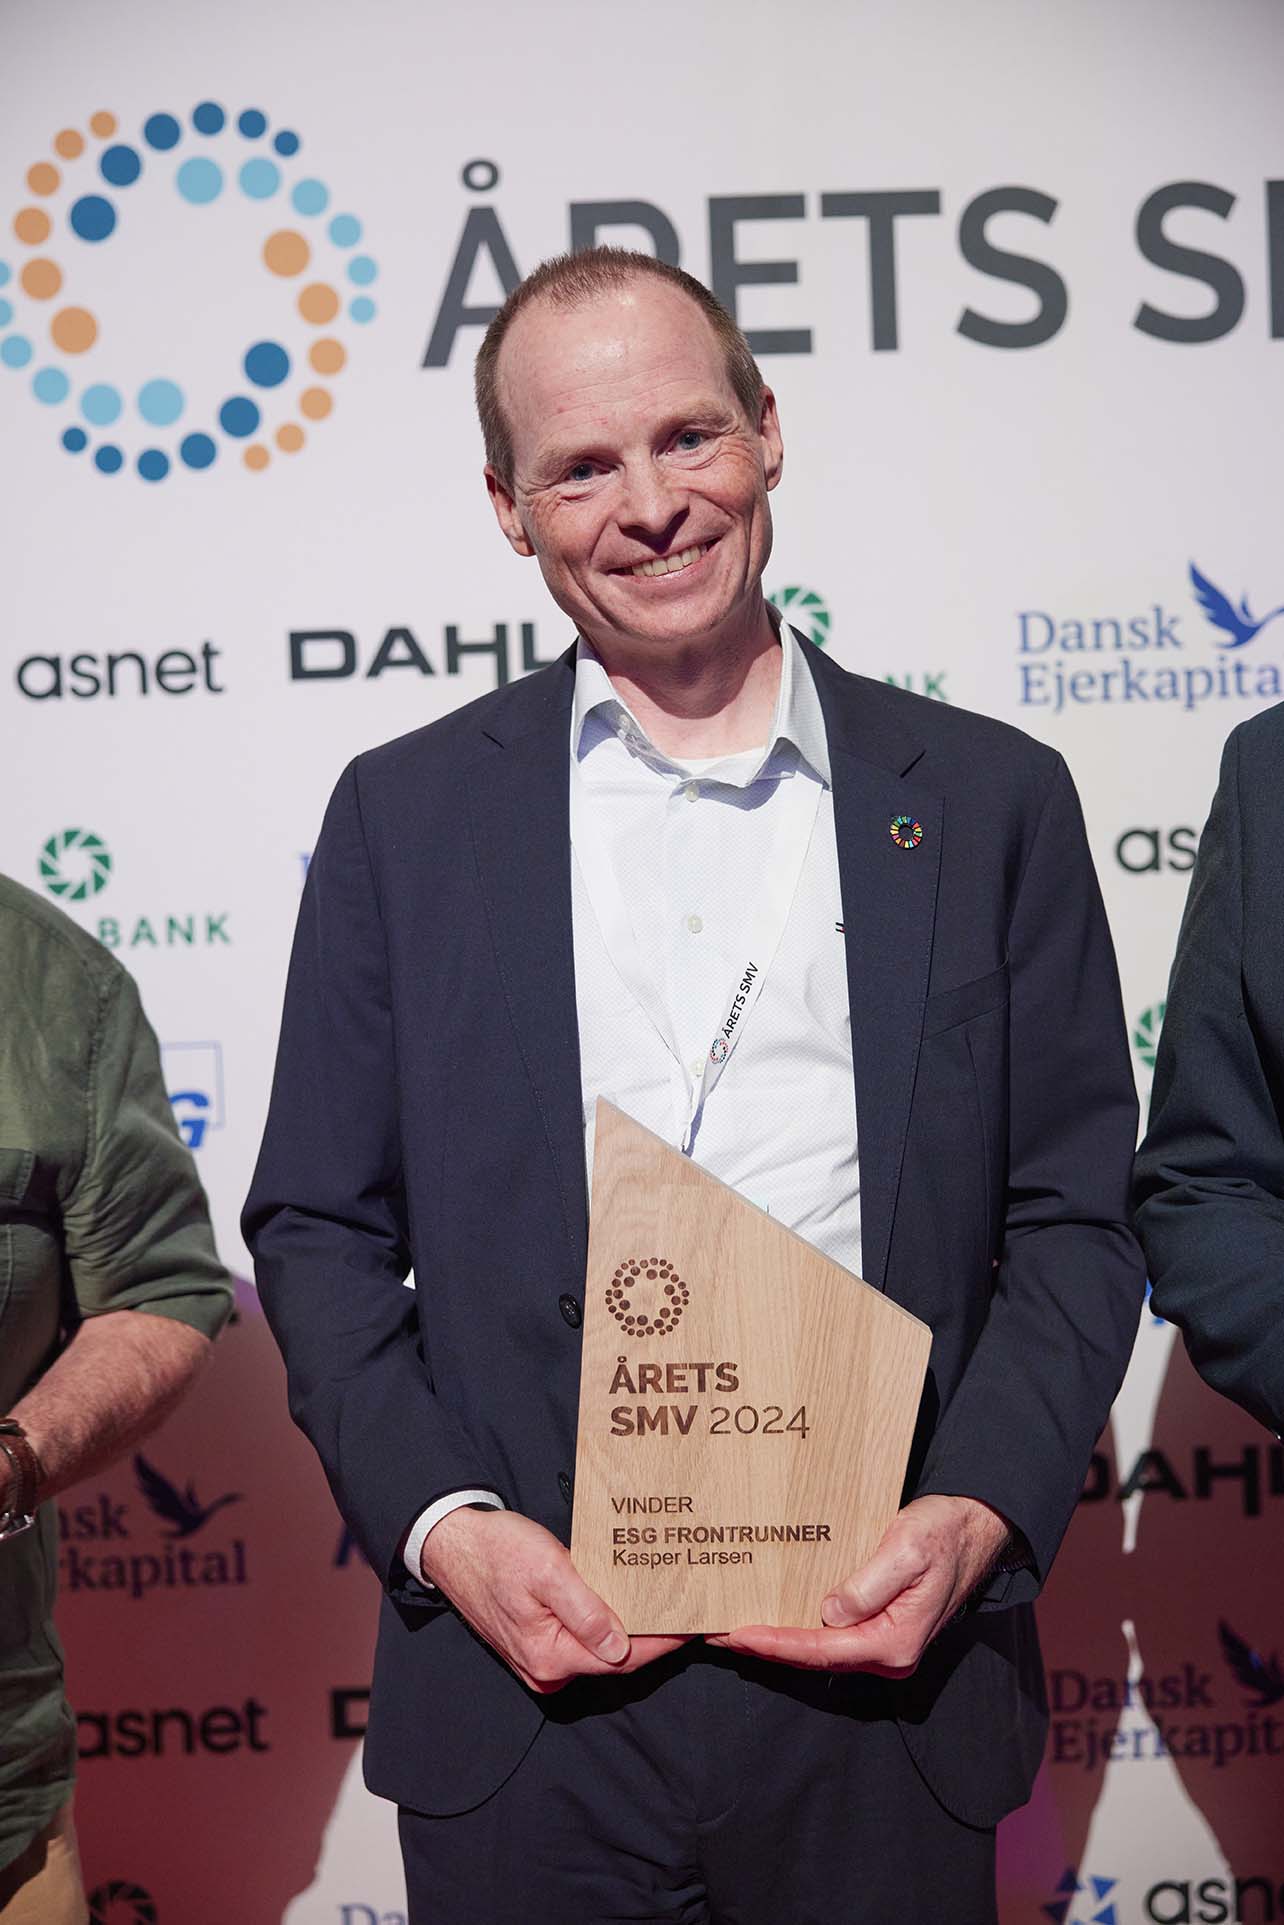 Kasper Larsen | ESG Frontrunner | Årets SMV 2024 | Vinder